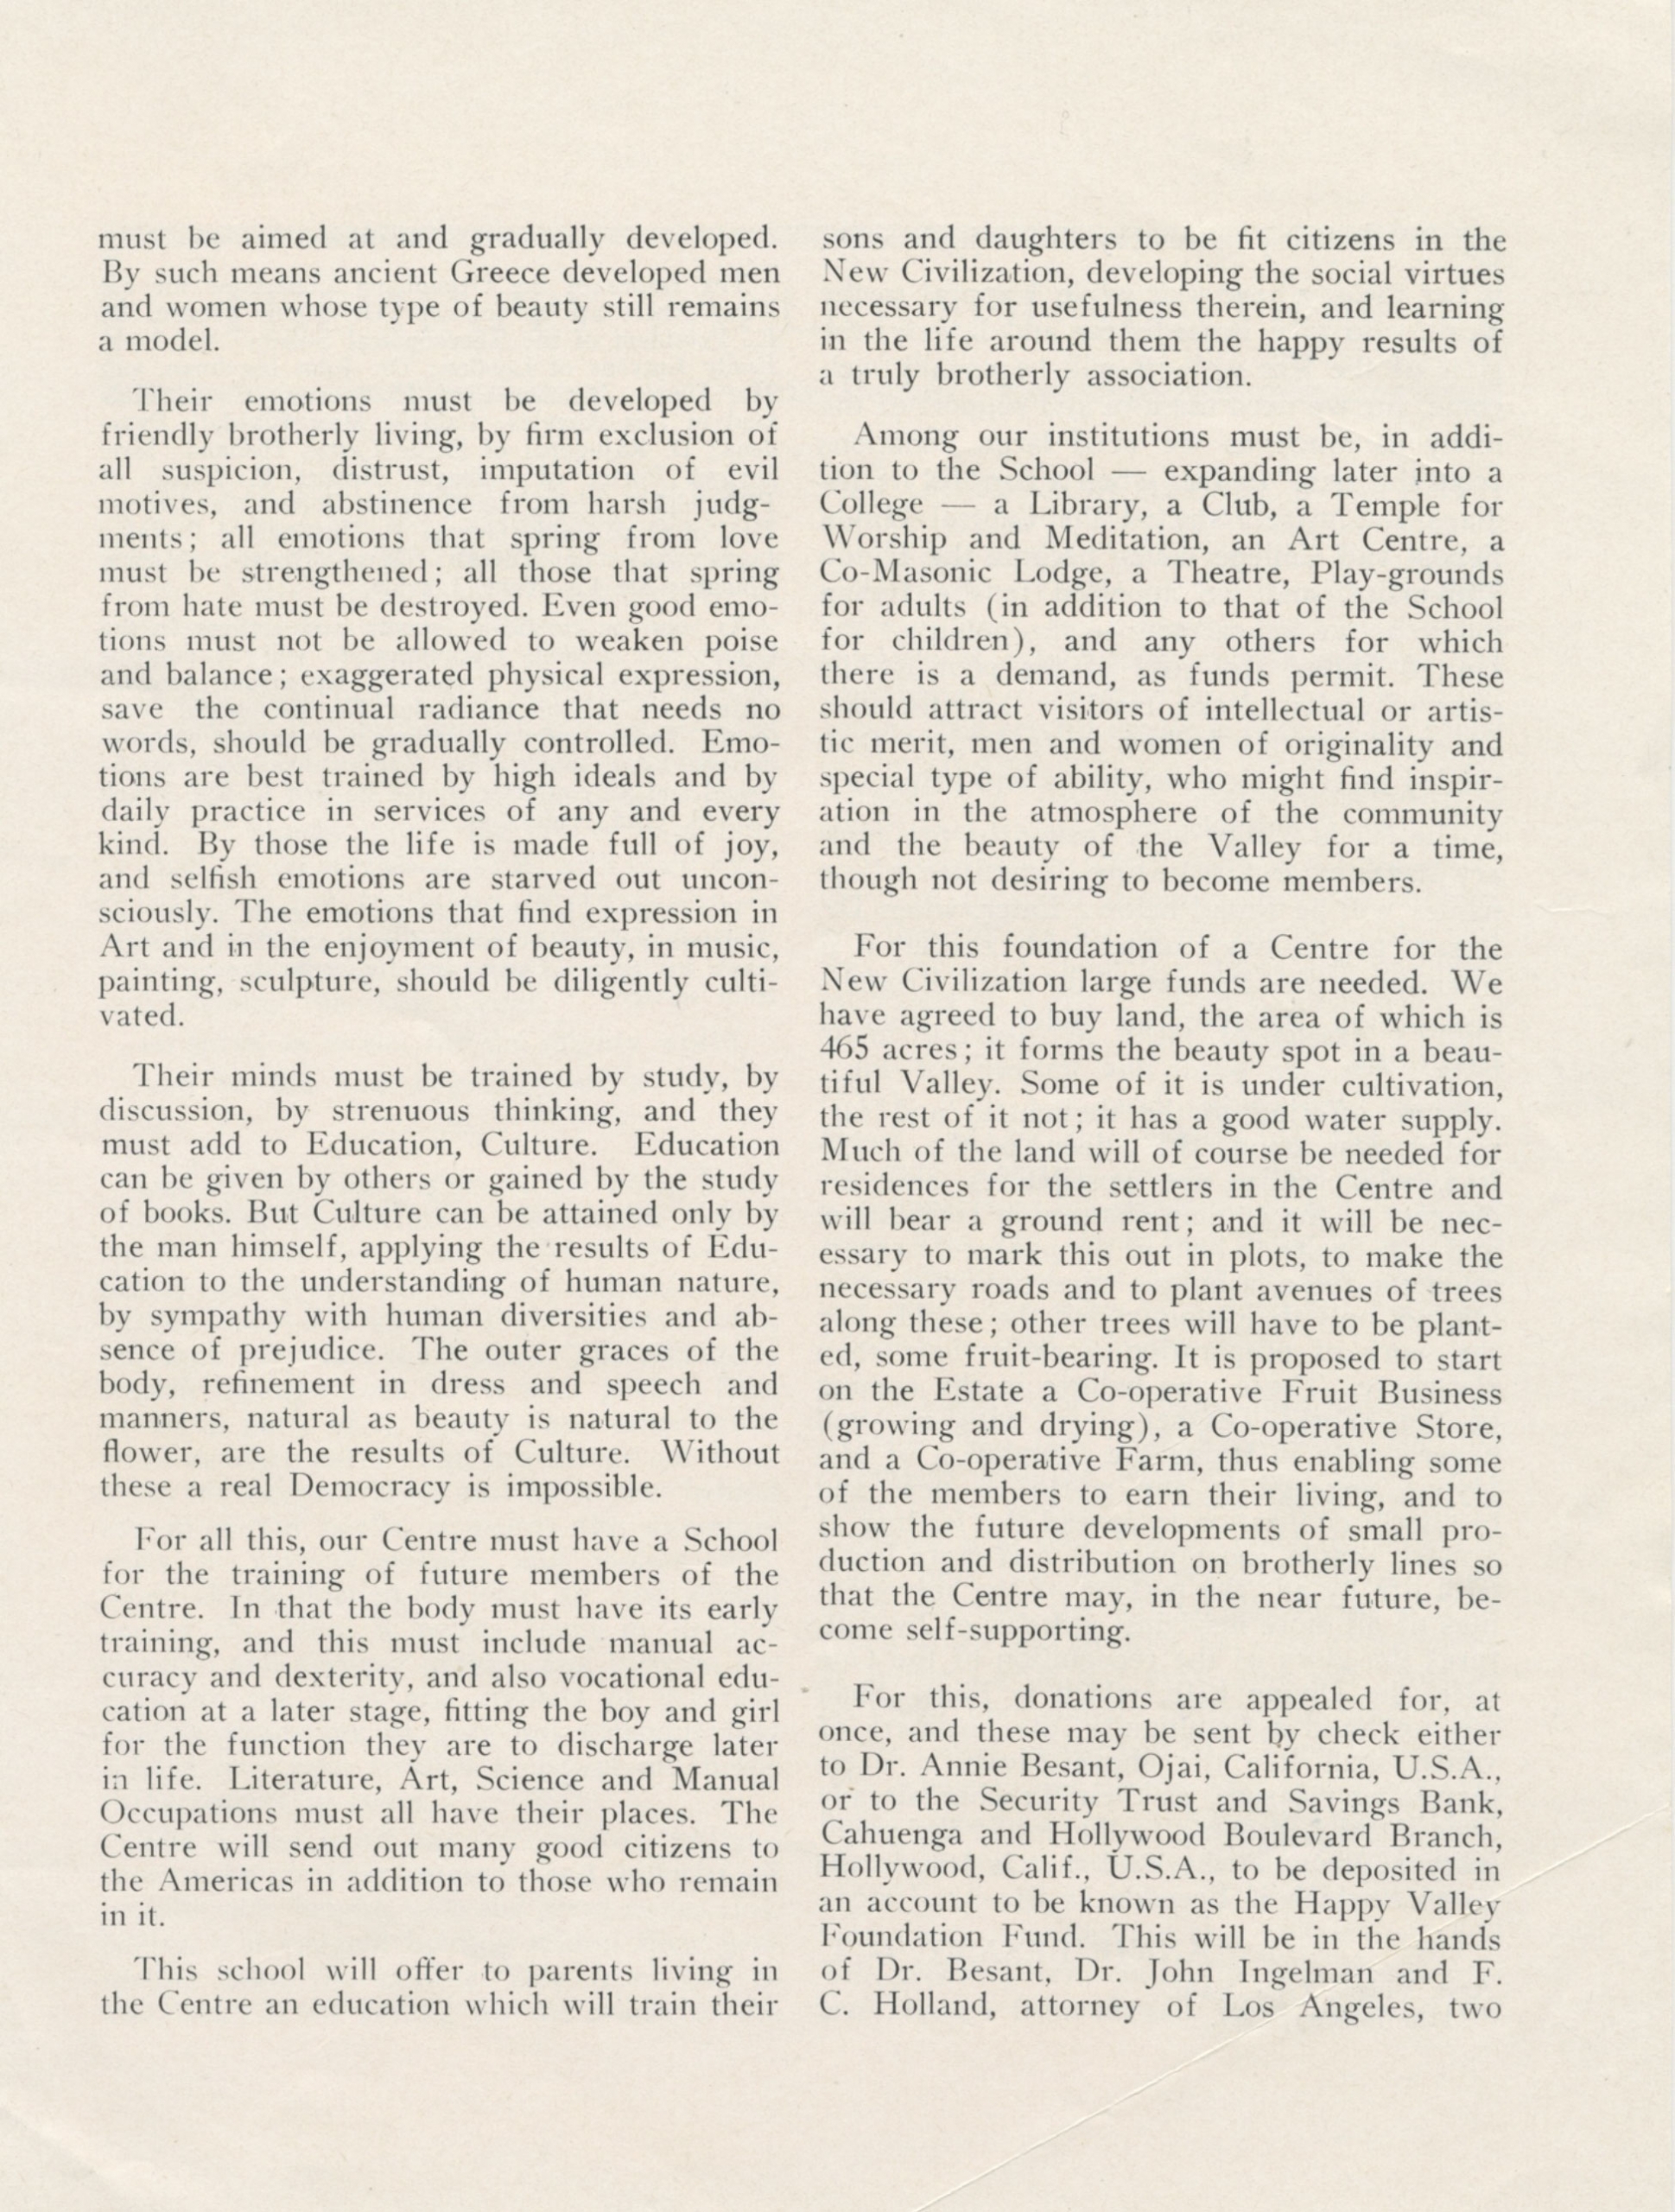 HVF Announcement 1927